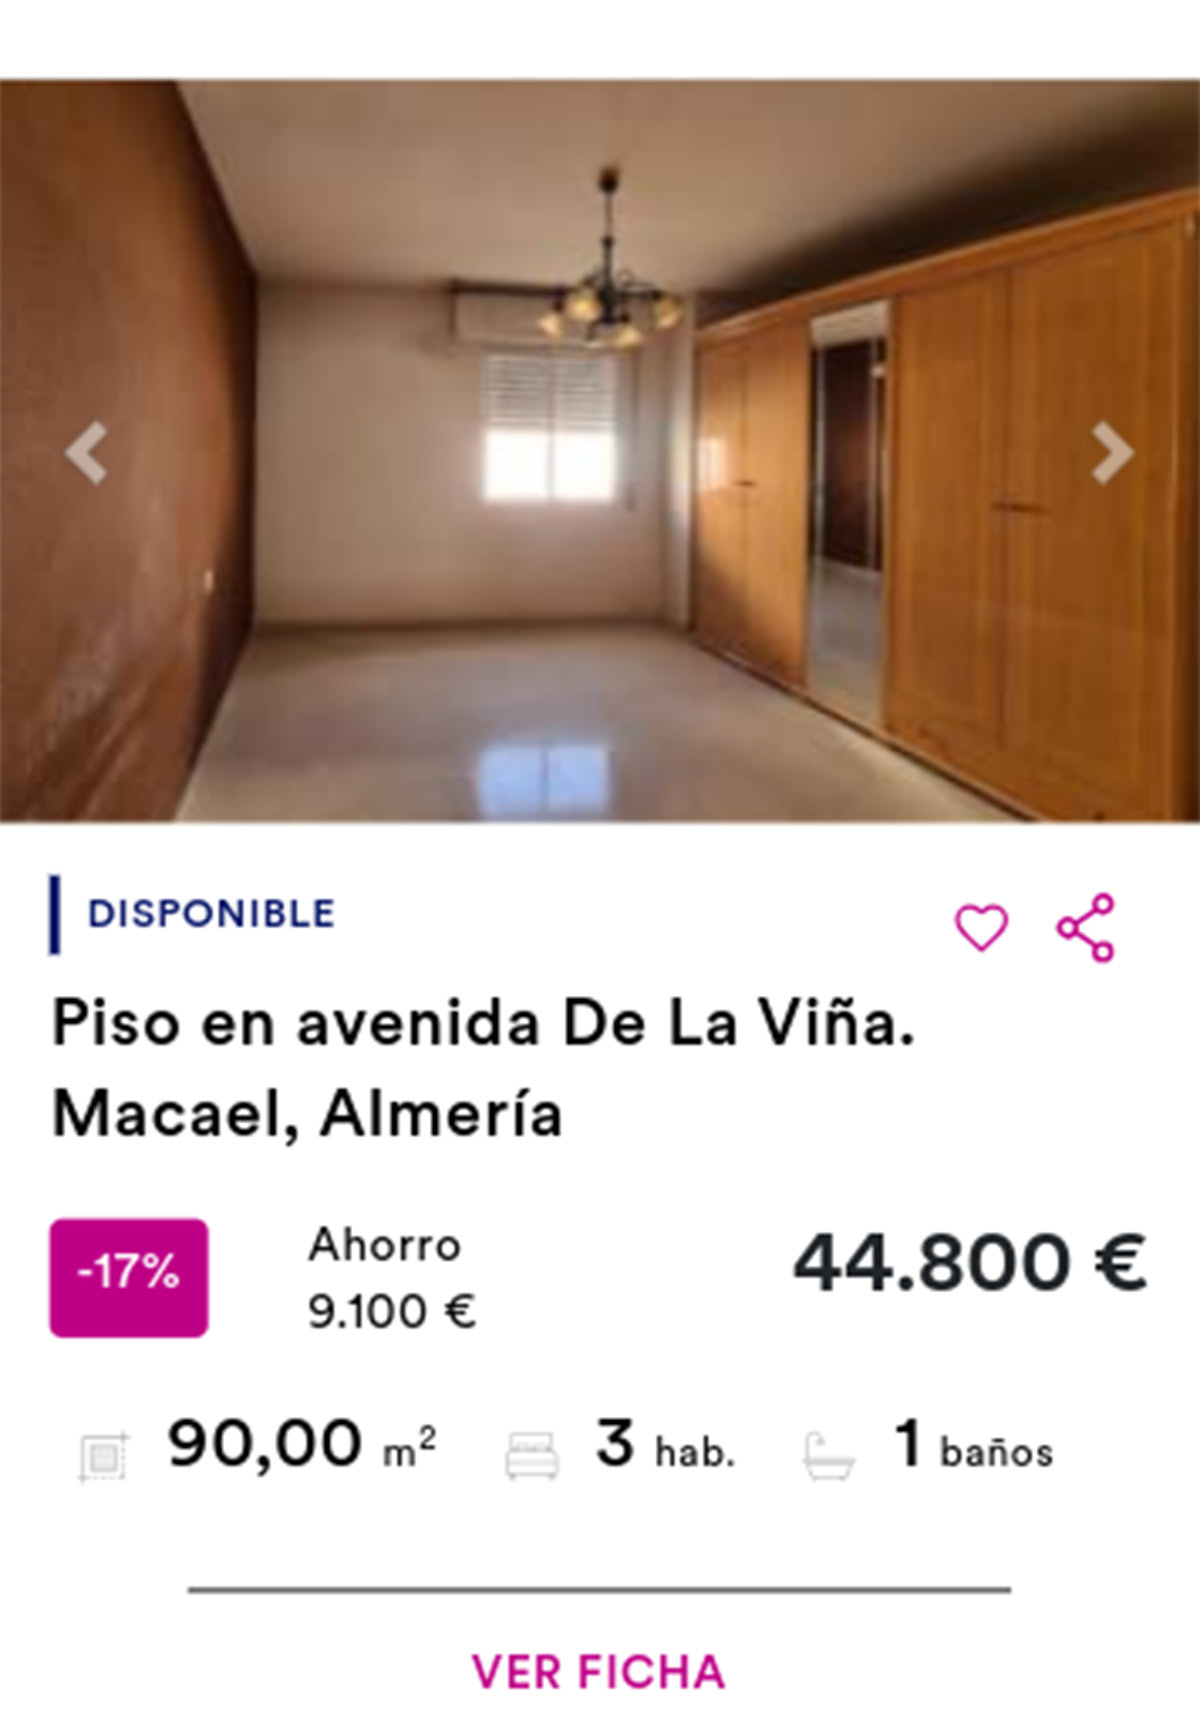 Piso de Cajamar por 44.800 euros